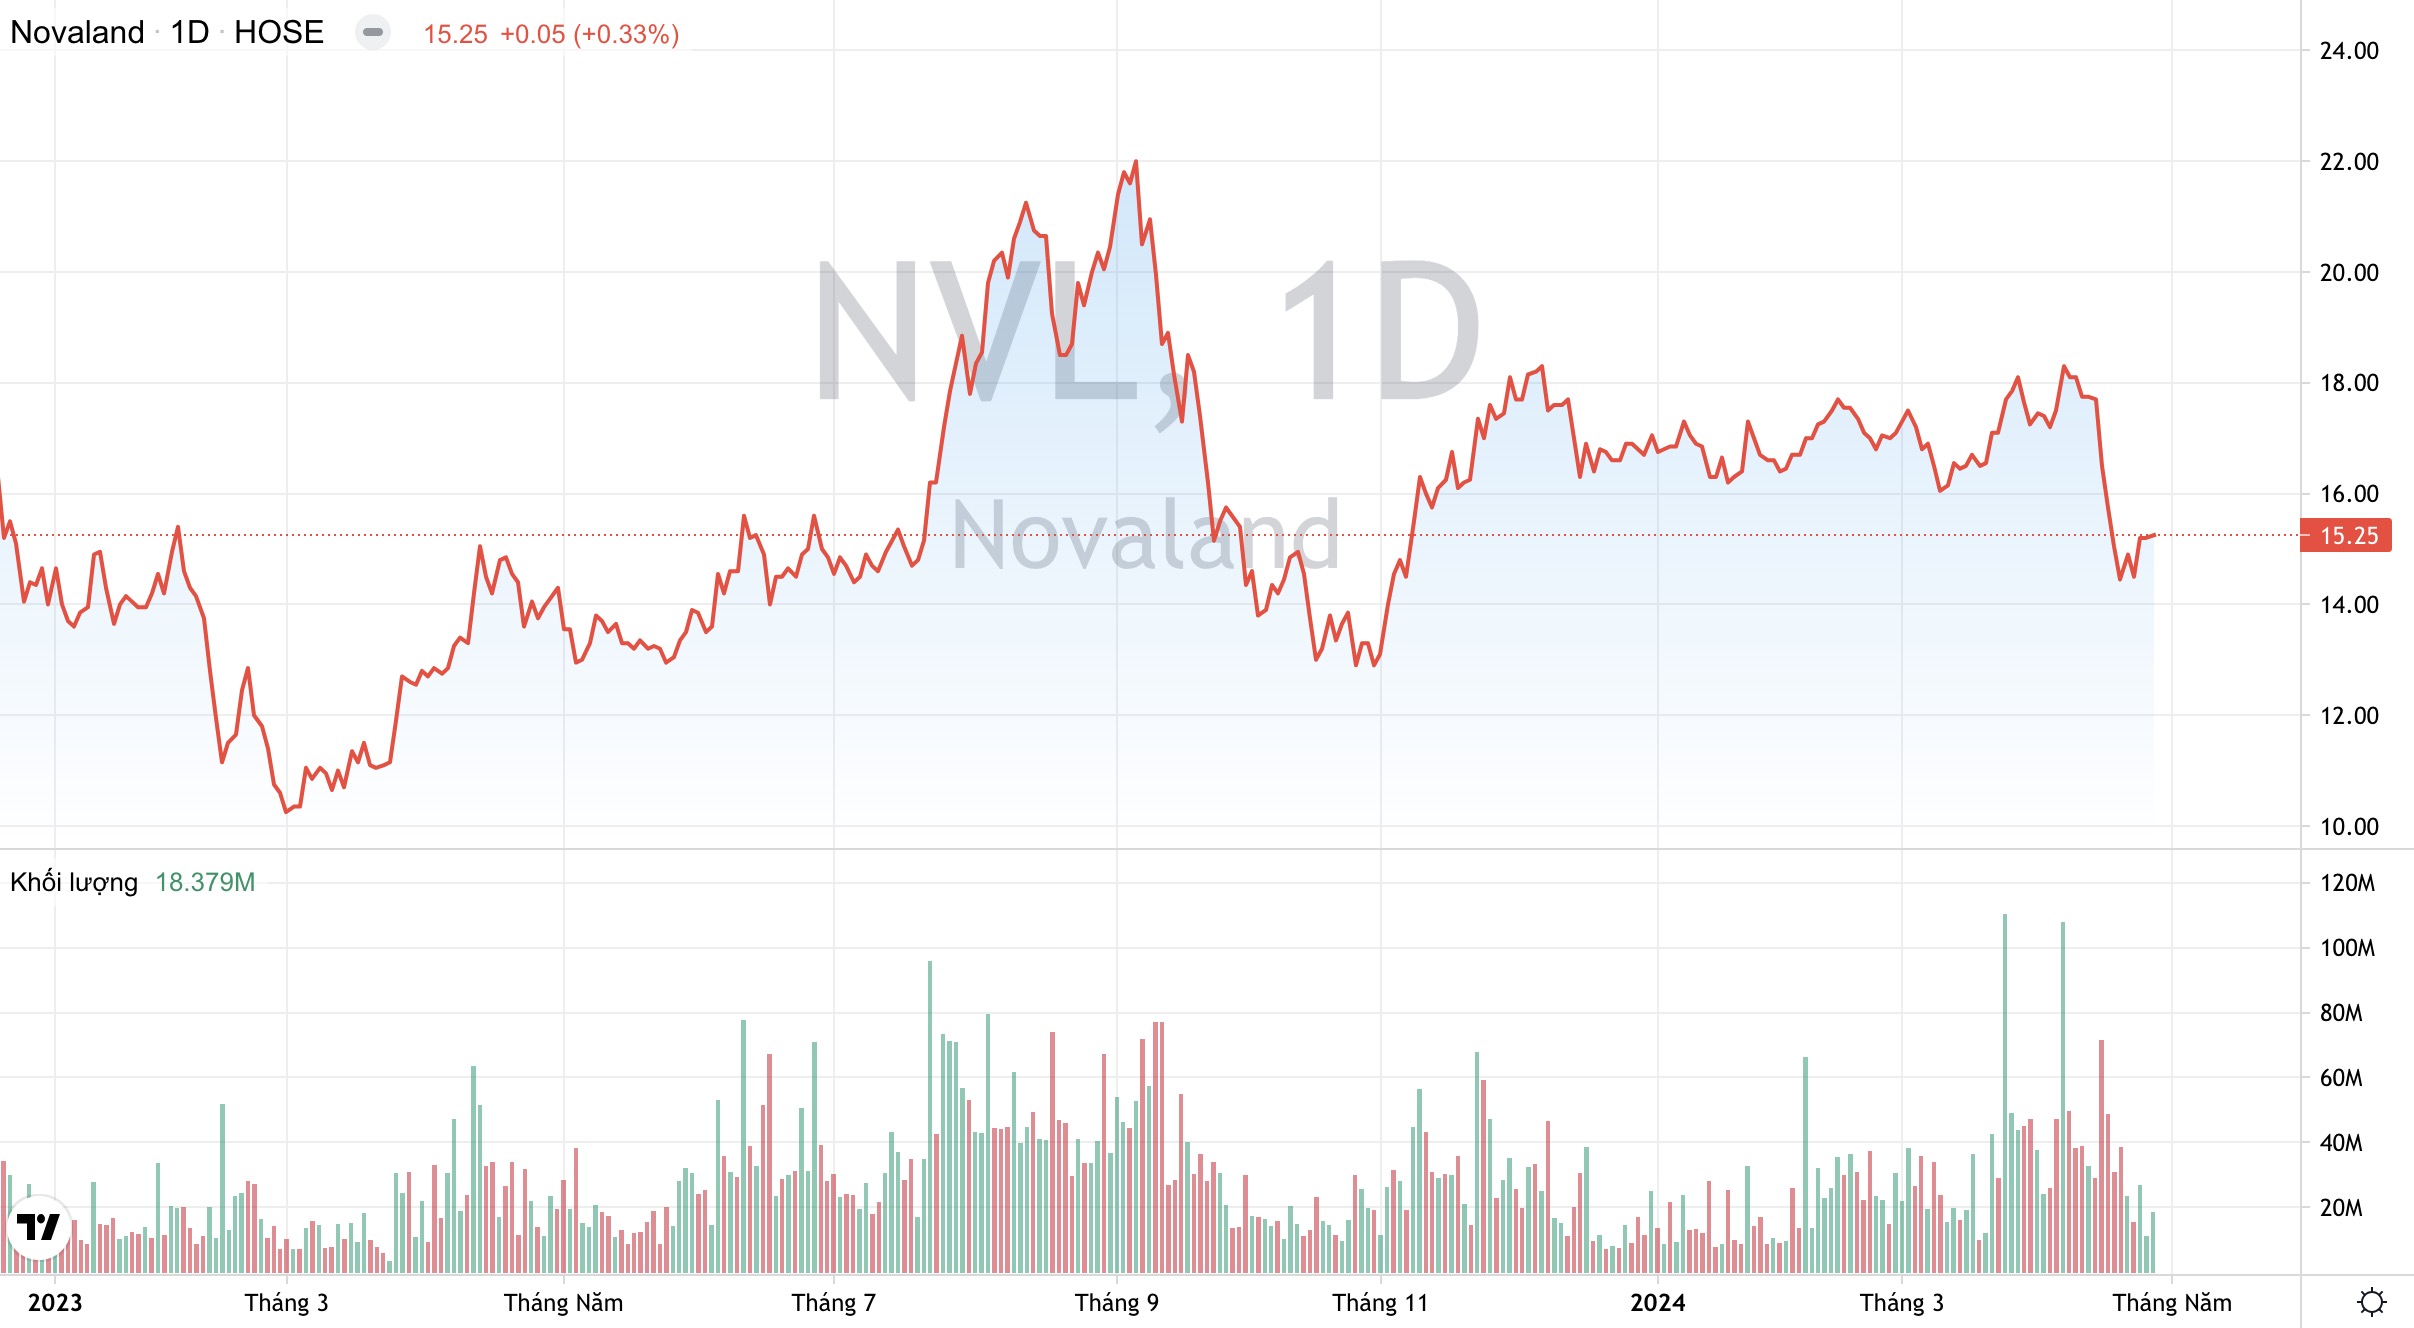 Giá cổ phiếu NVL Tập đoàn Novaland